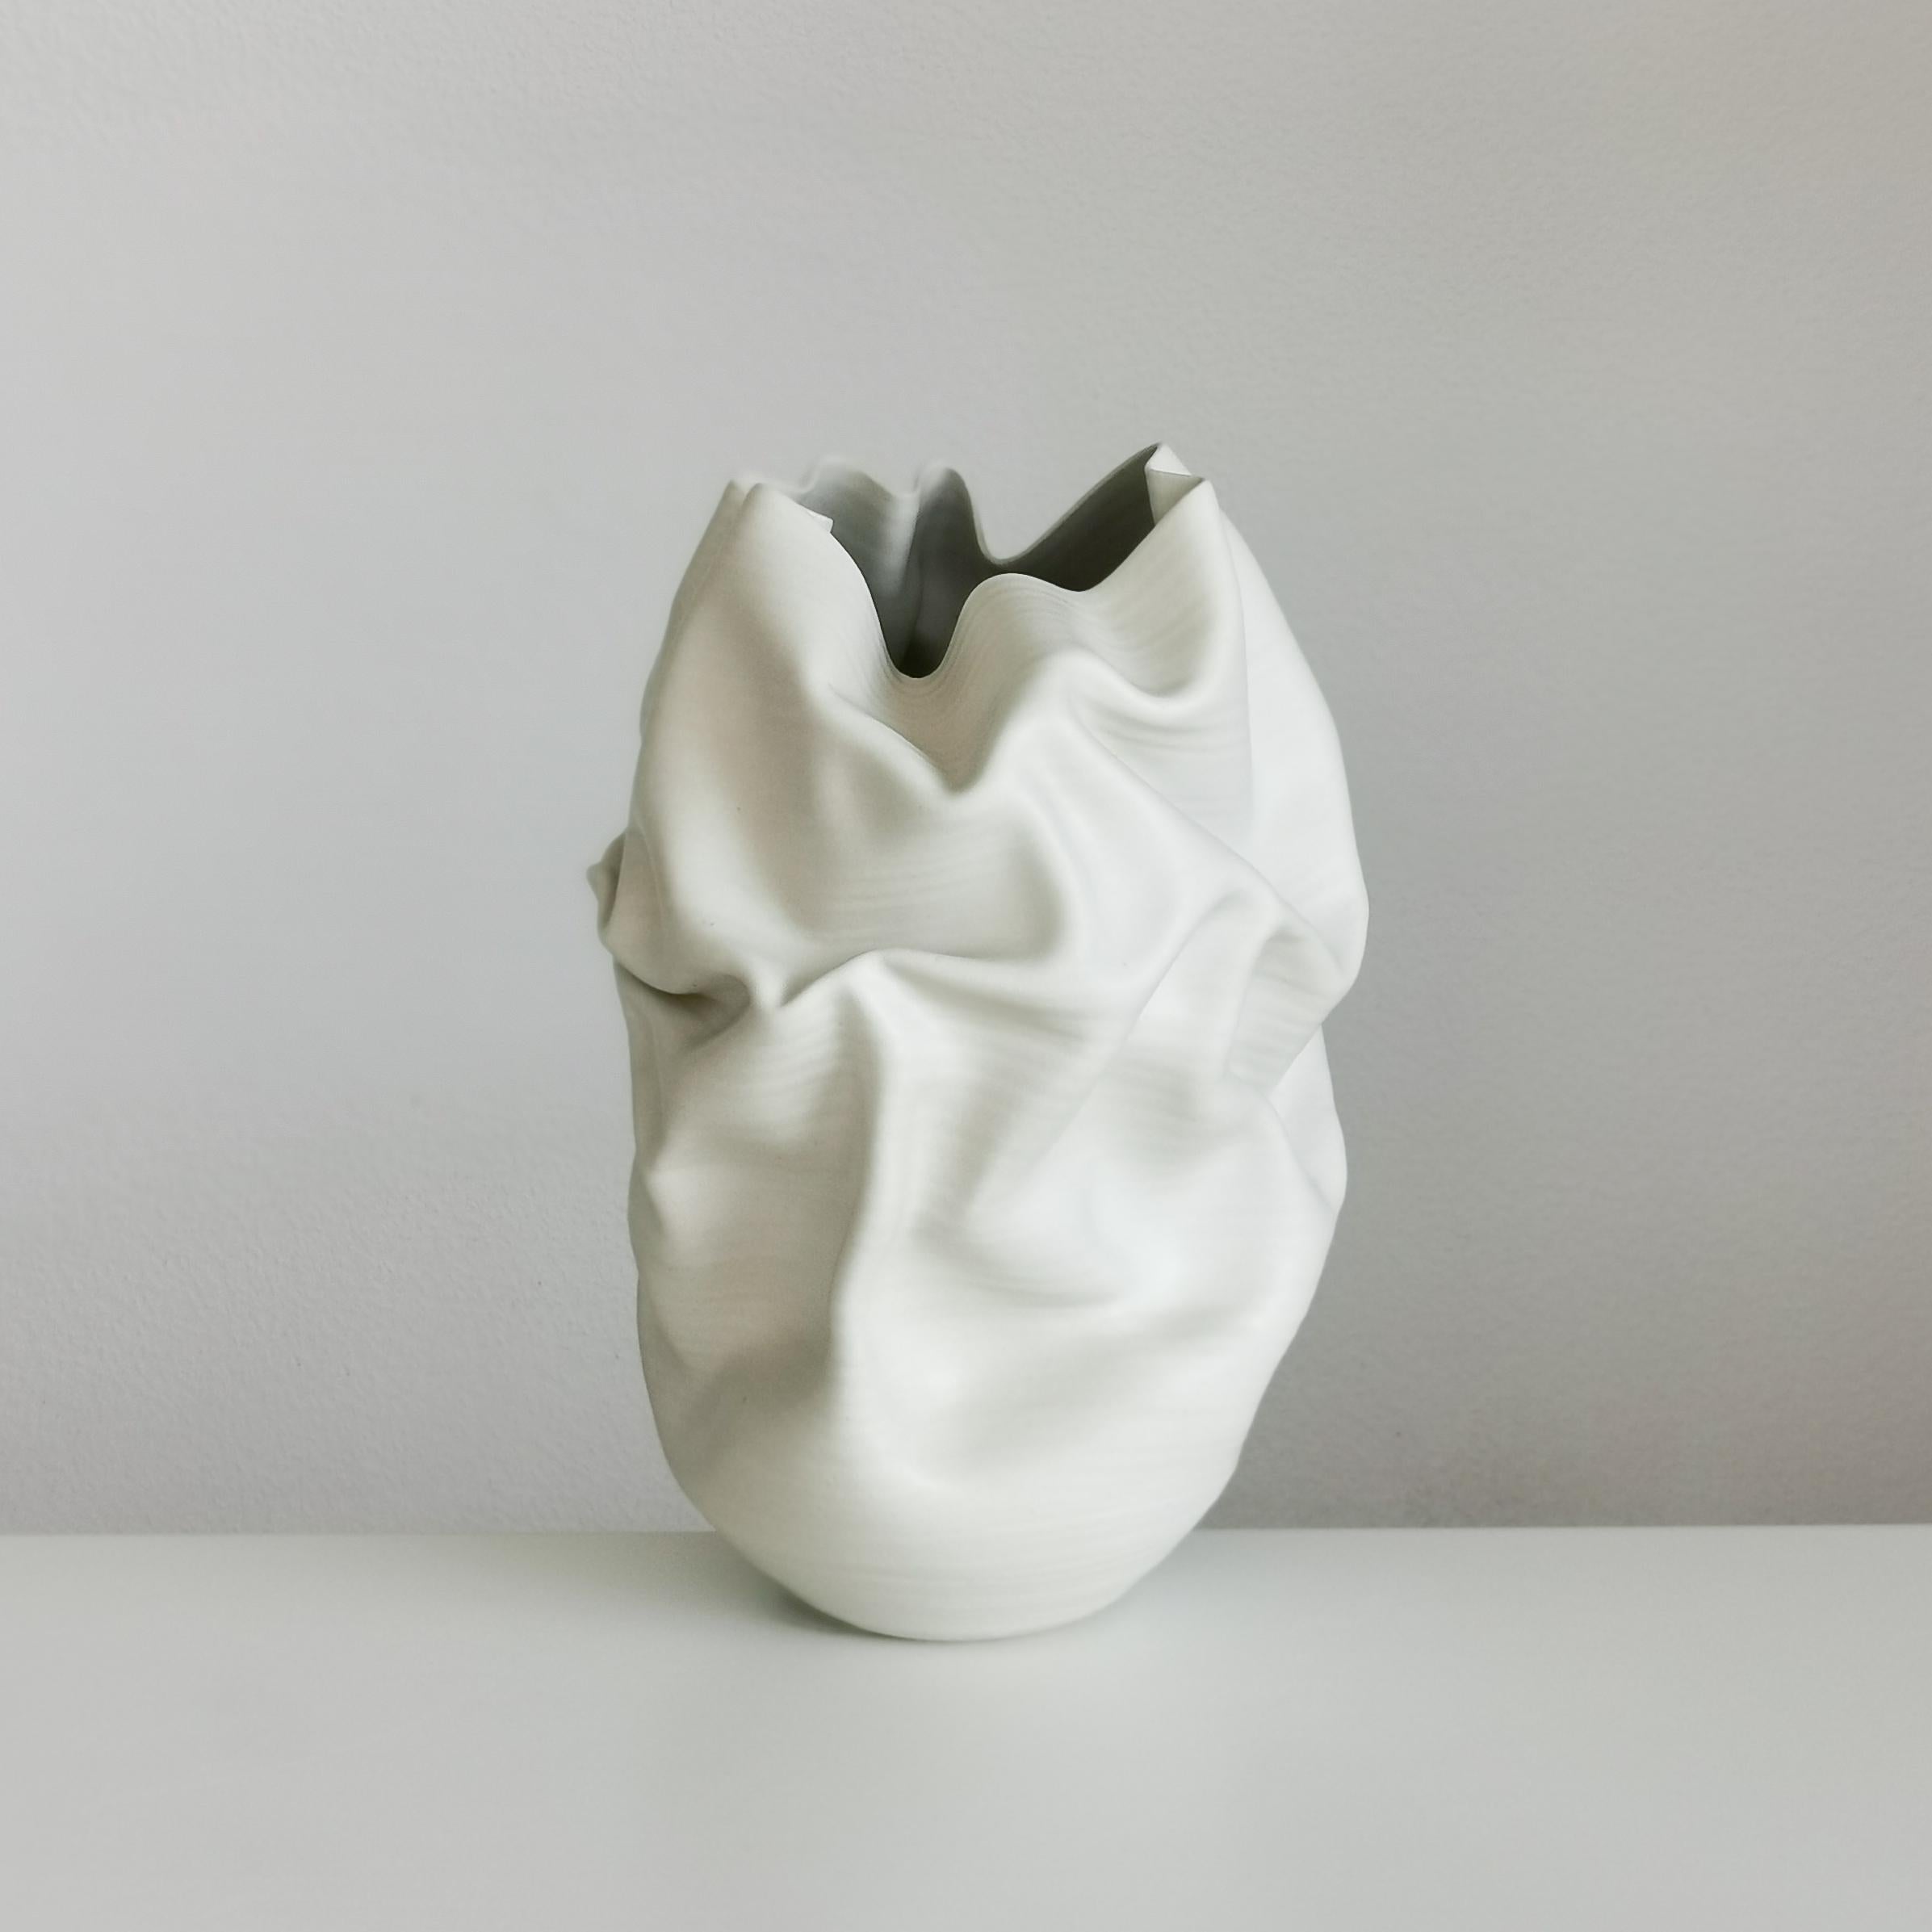 Clay Medium Tall White Undulating Crumpled Form, Unique Ceramic Sculpture Vessel N.51